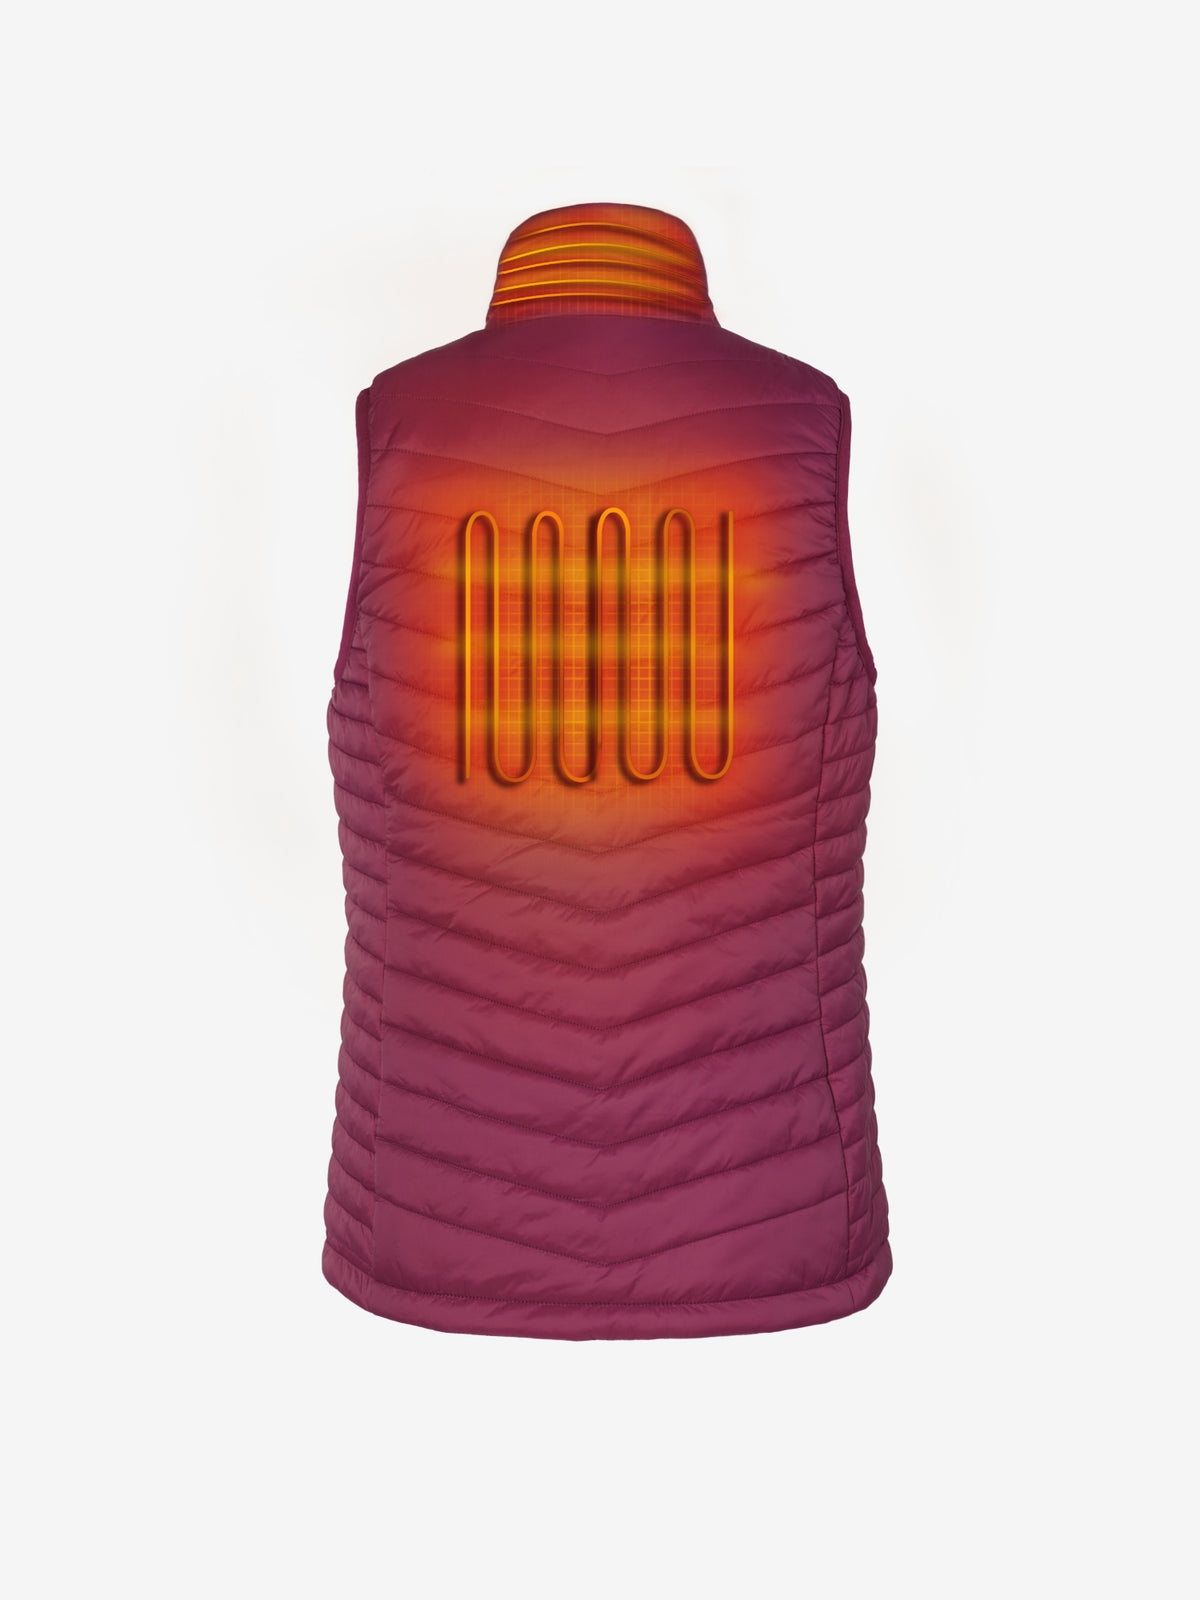 CozyHeat Gear™ SupremeHeat Winter Vest – Cozy Heat Gear